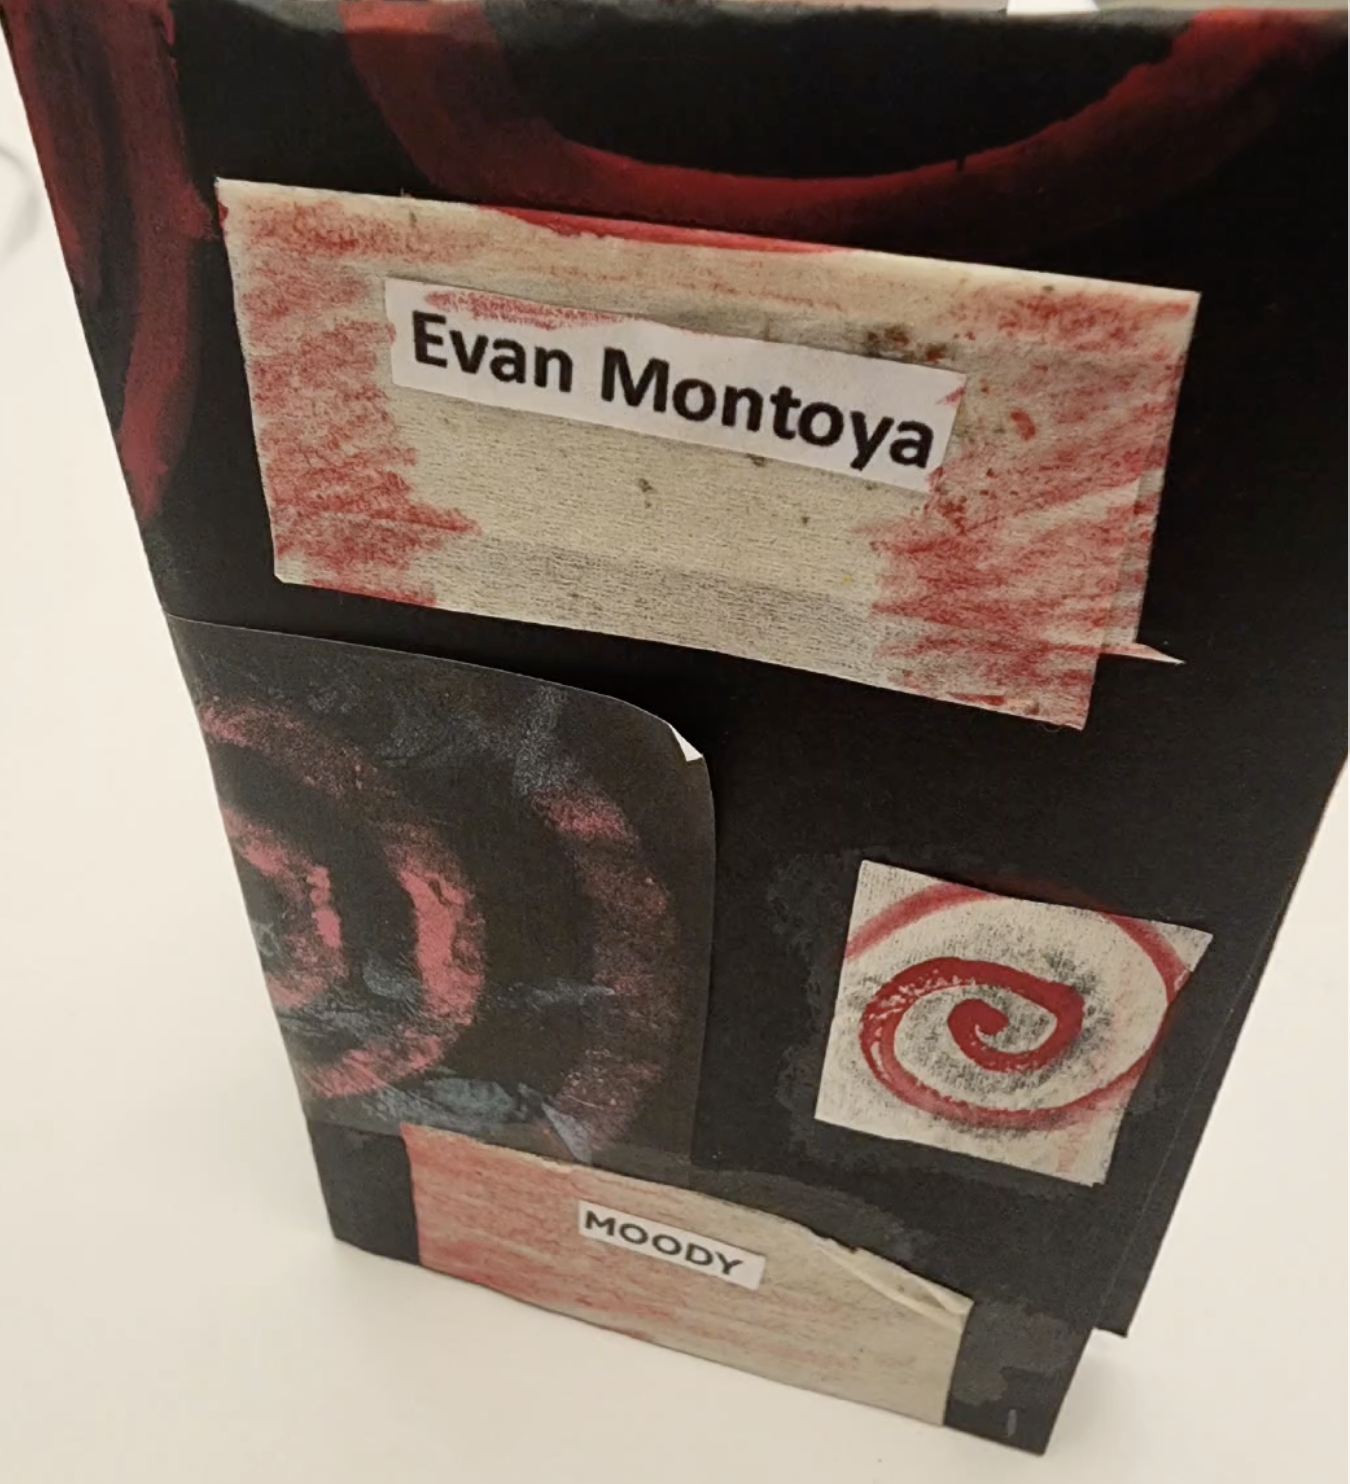 Evan Montoya - Zine and Tea Bags